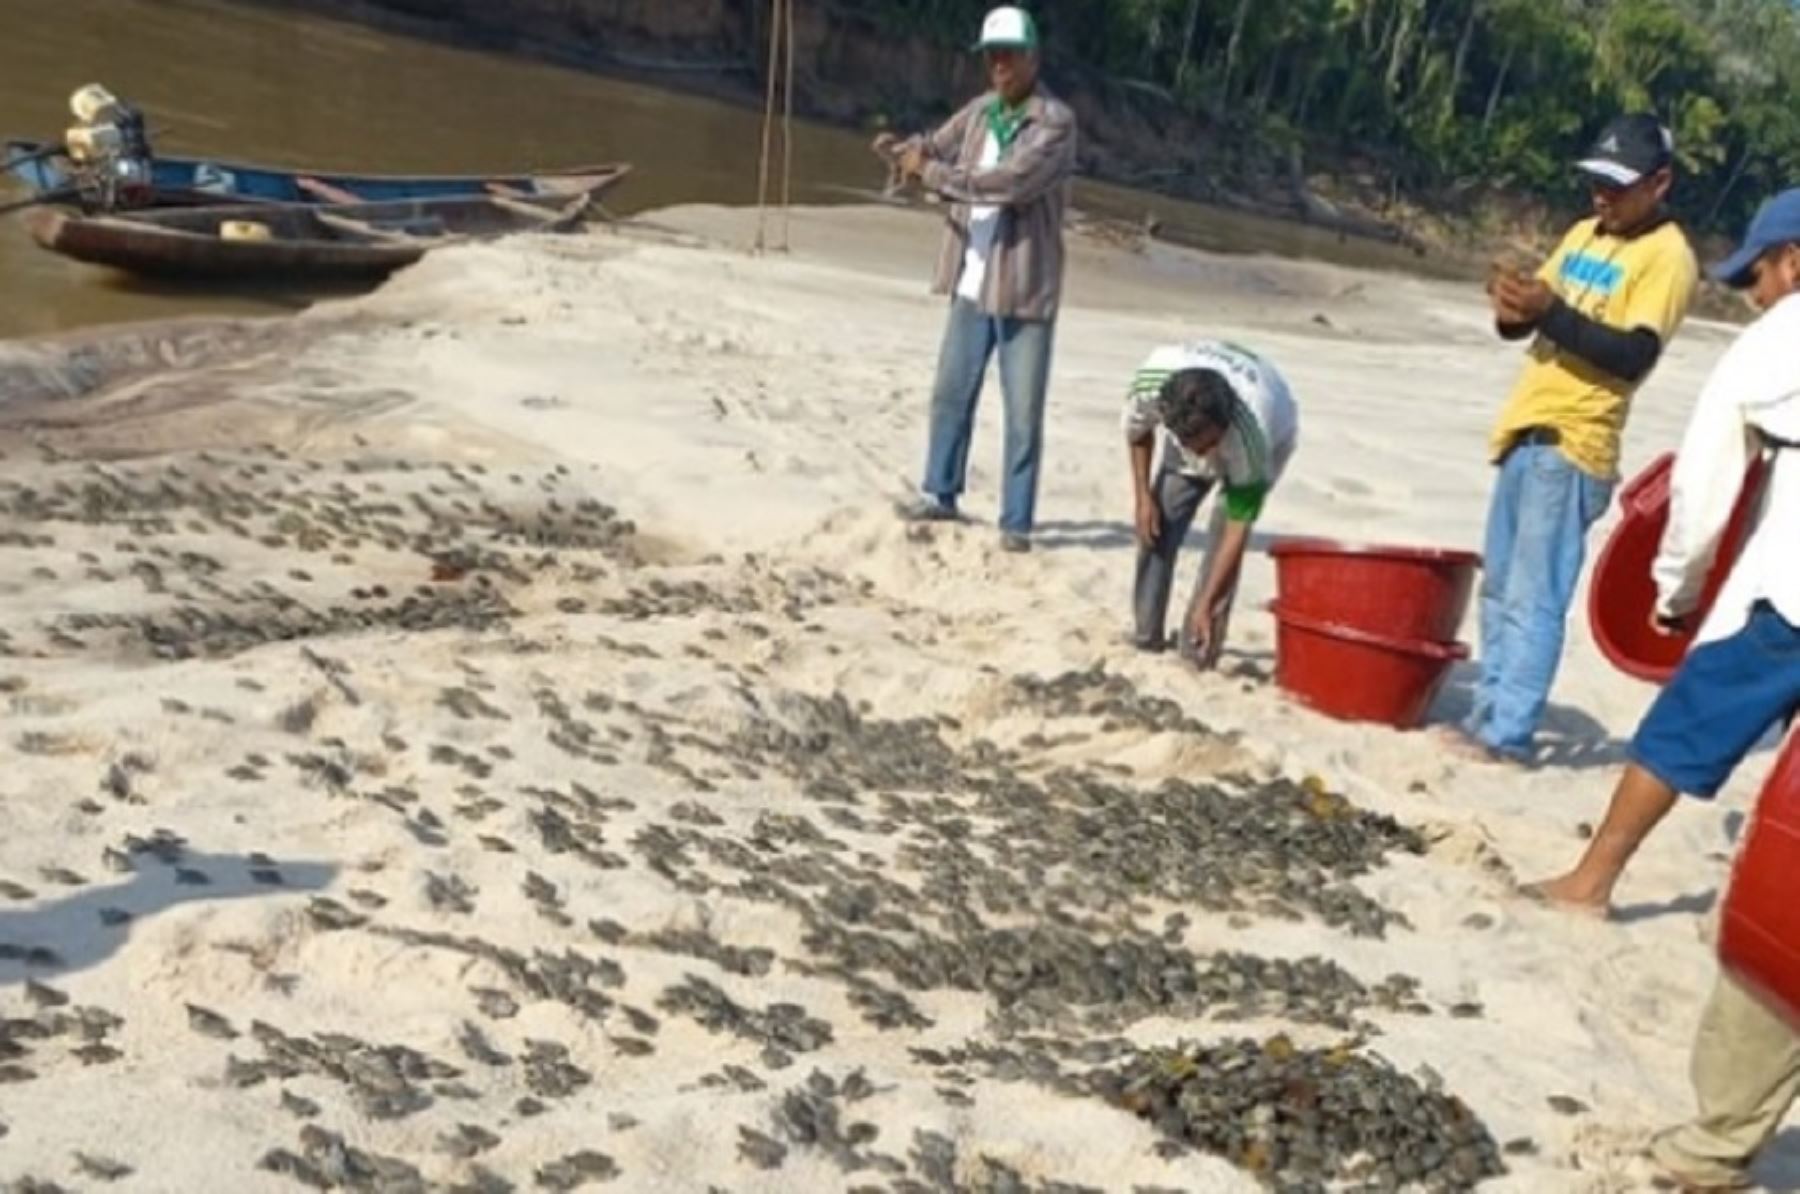 El Sernanp promovió la liberación de más de 6,000 tortugas acuáticas en las cochas de los ríos Cushabatay y Shaypaya, afluentes del río Ucayali, en el Parque Nacional Cordillera Azul.